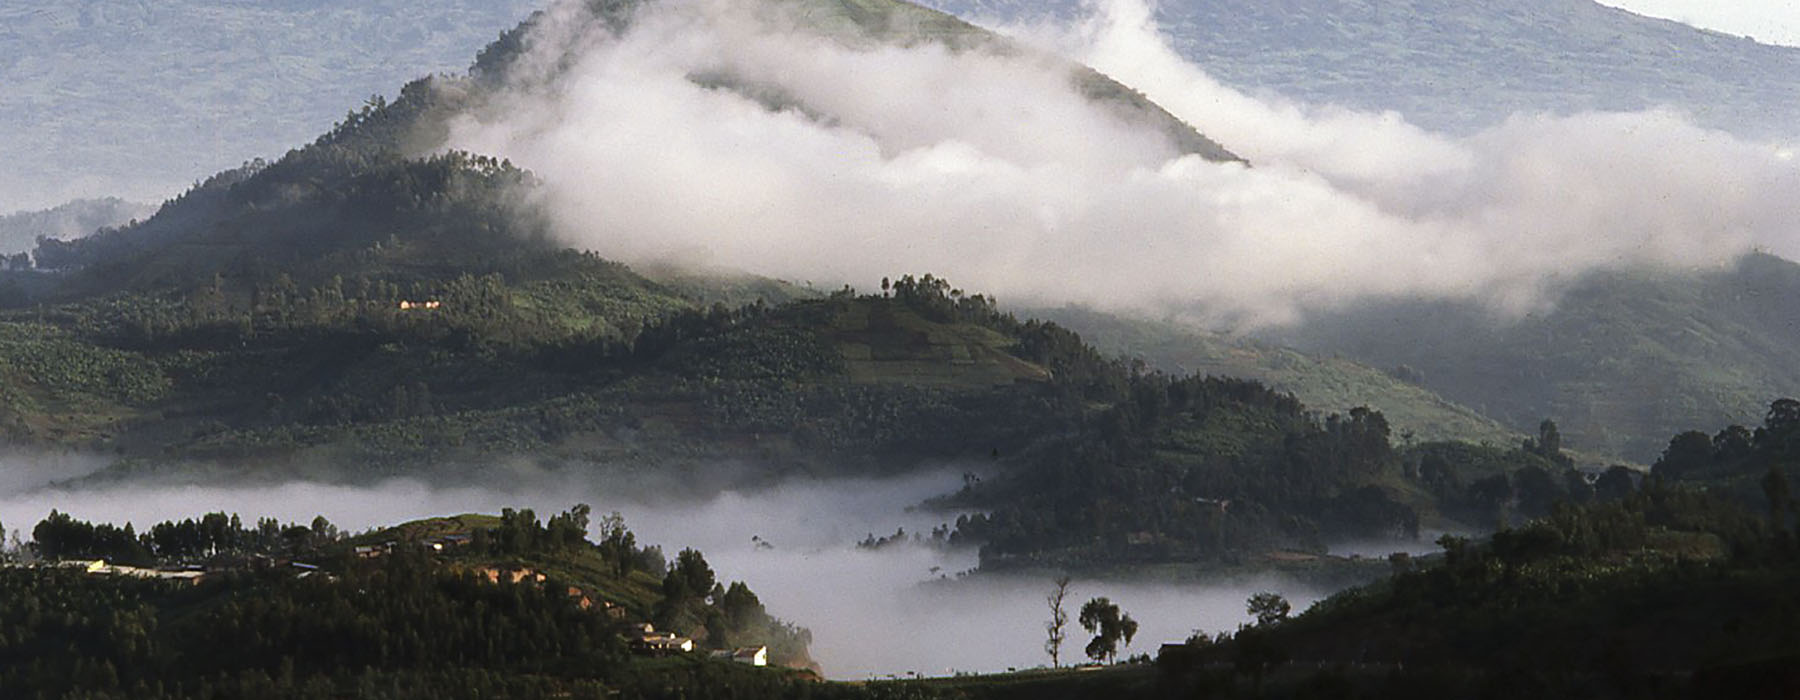 Rwanda<br class="hidden-md hidden-lg" /> Travel Bucket List